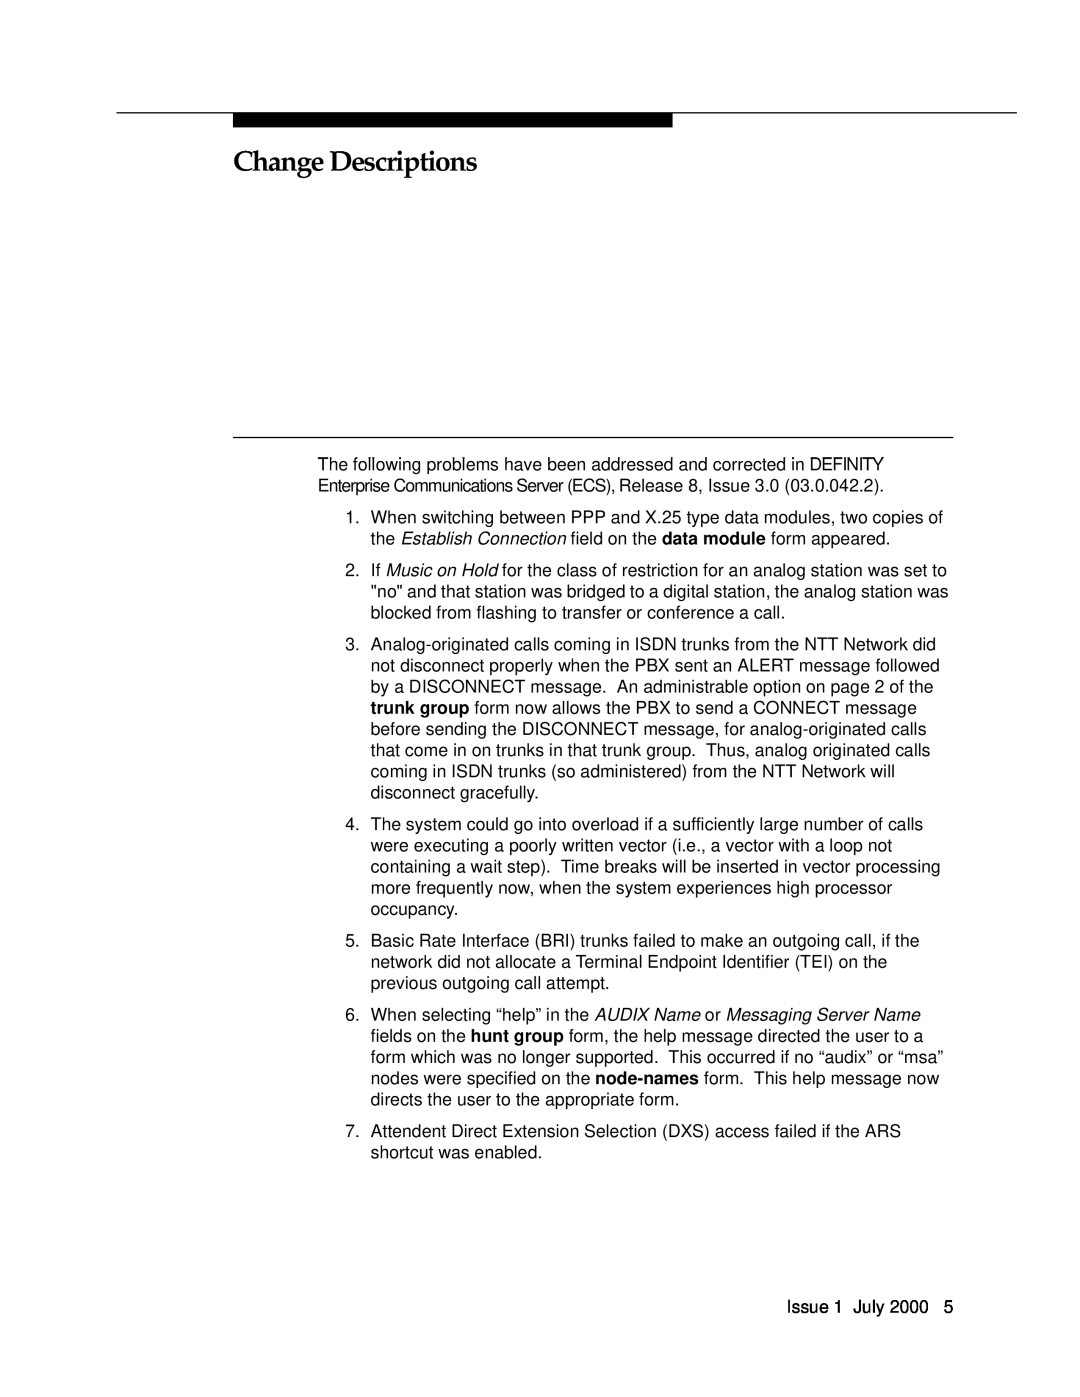 Lucent Technologies 03.0.042.2 manual Change Descriptions 